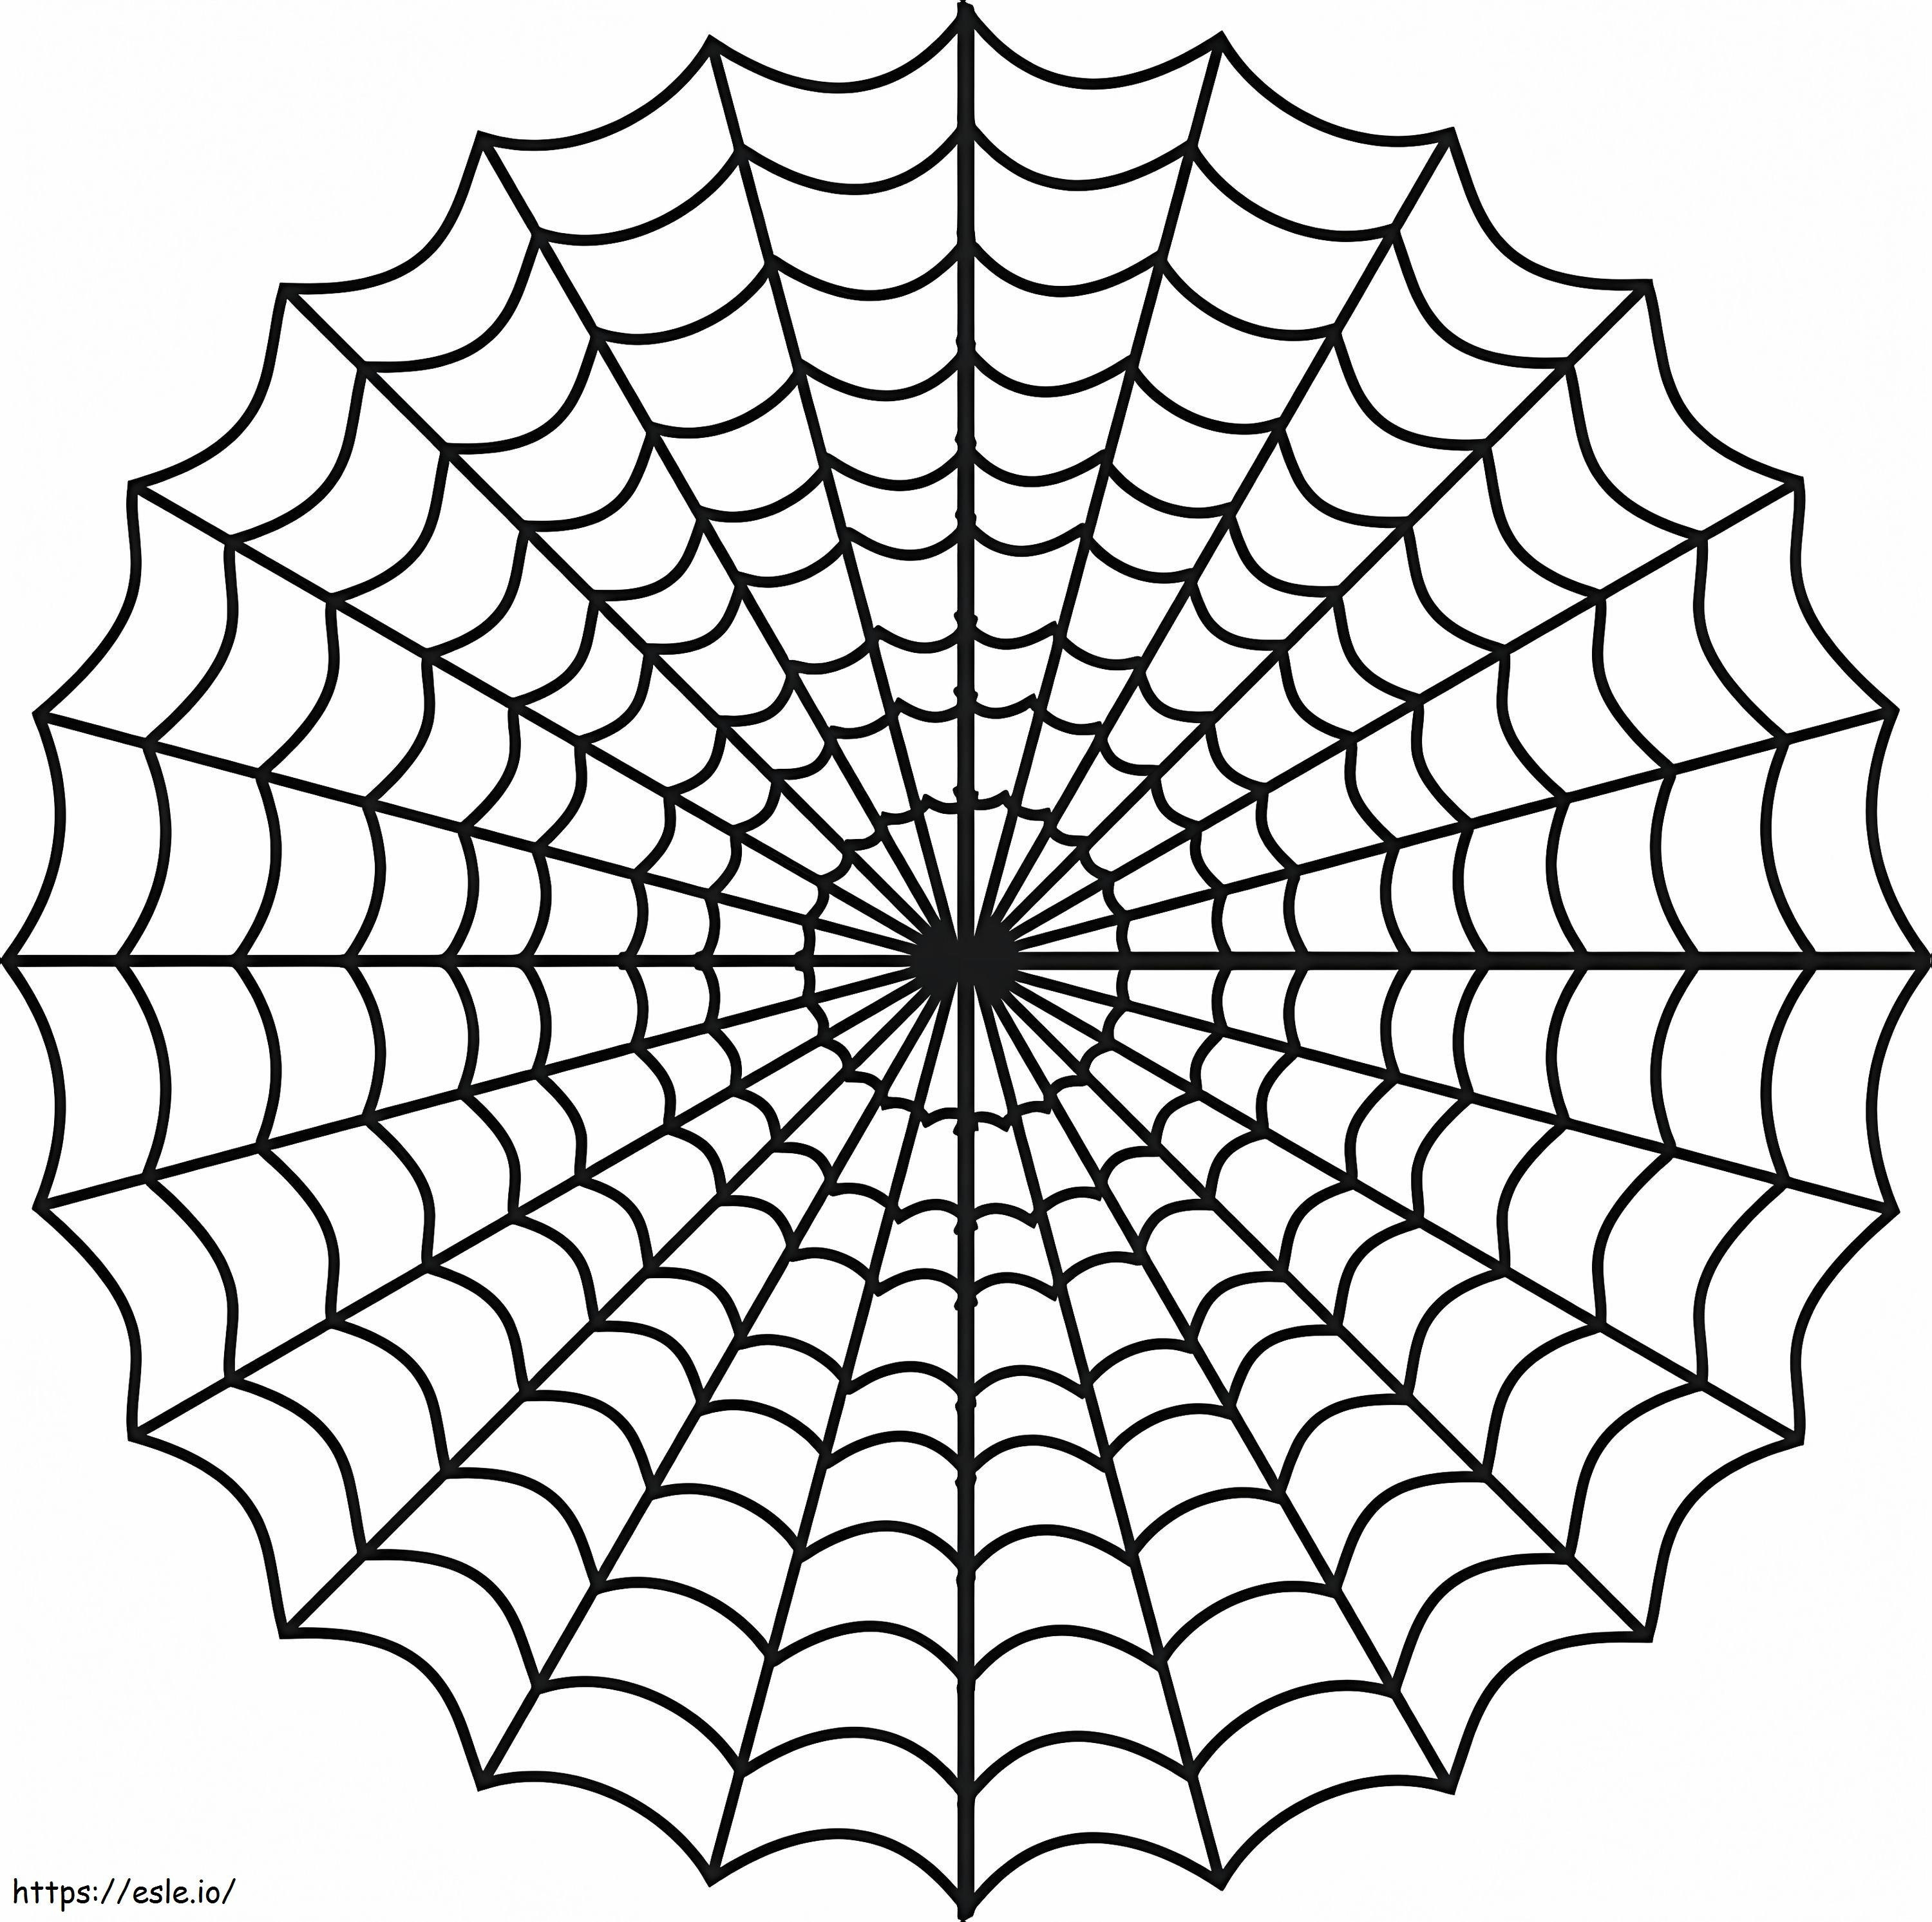 Kostenloses druckbares Spinnennetz ausmalbilder